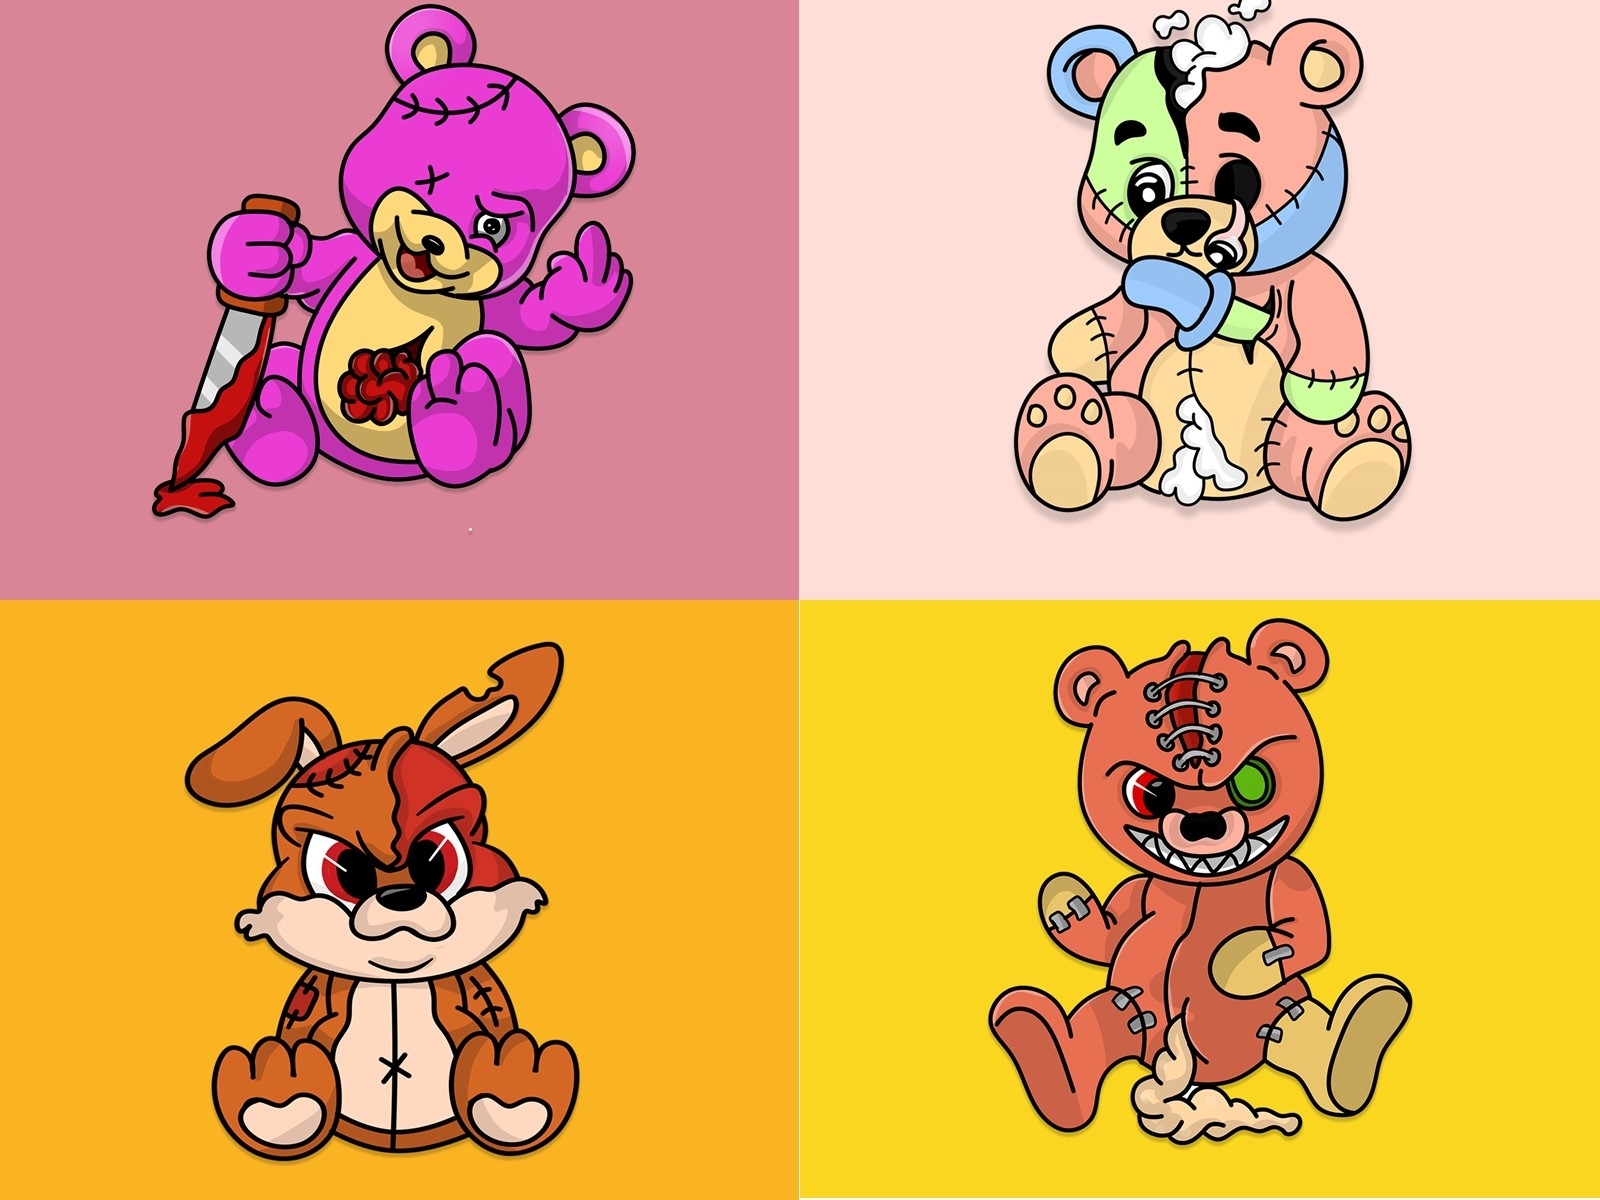 drawings of evil teddy bears